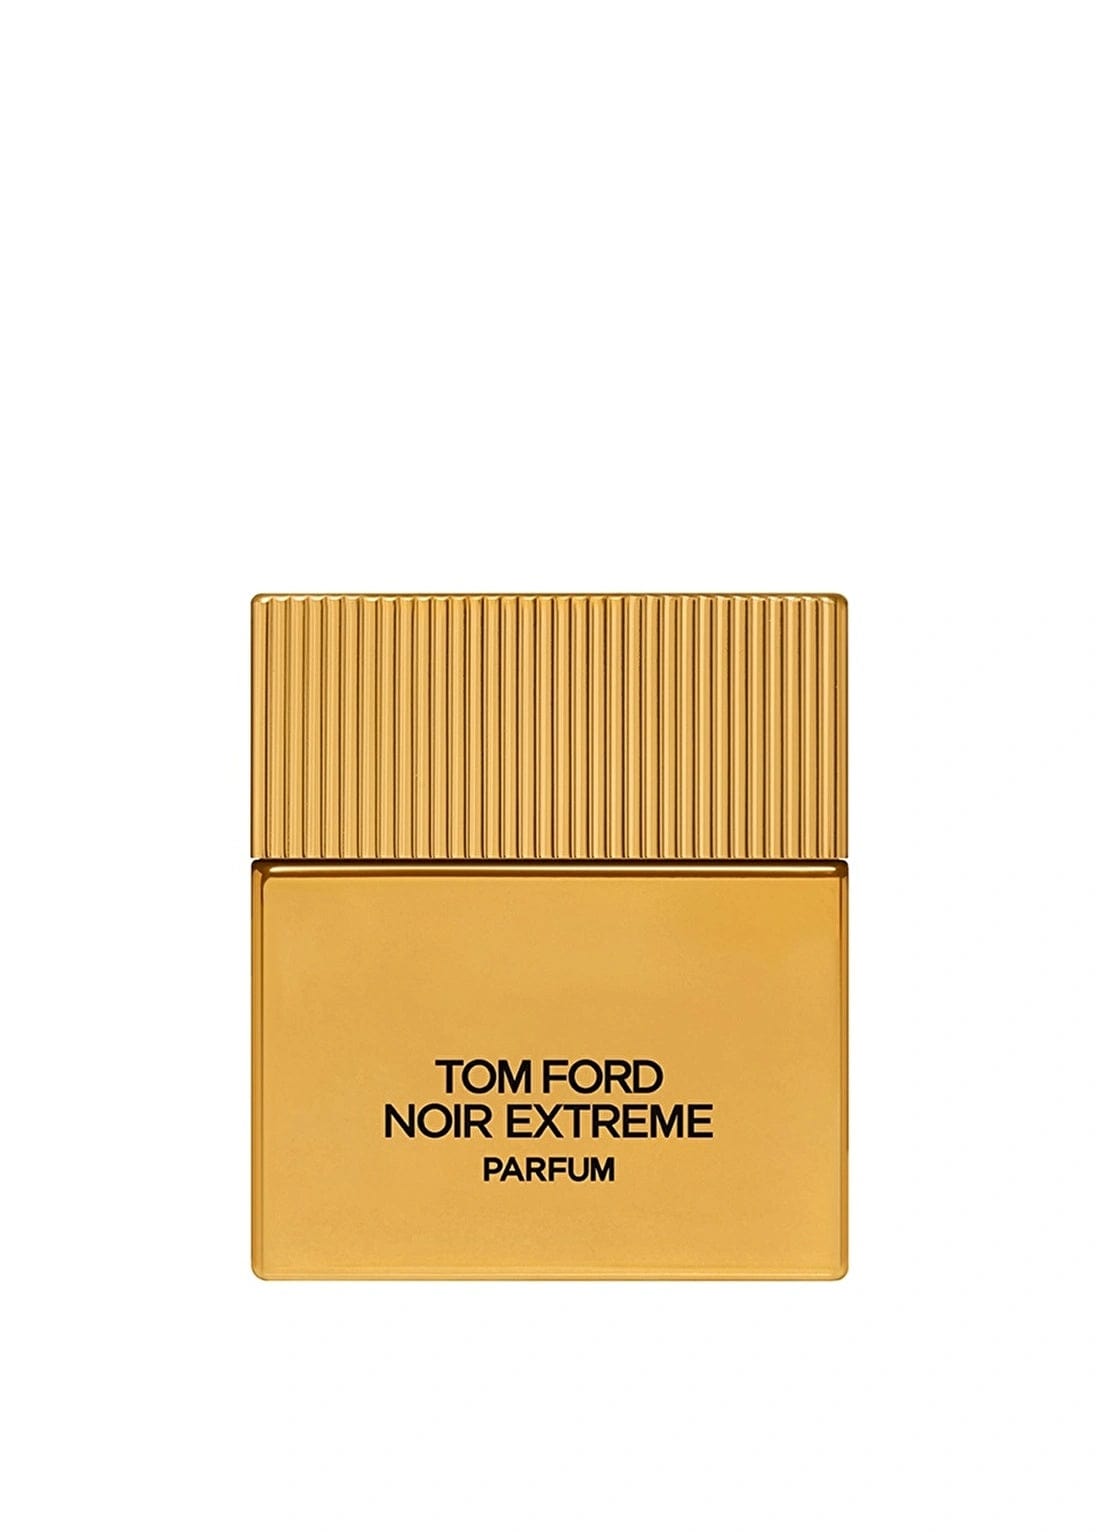 Tom Ford Noir Extreme Perfume 50 Ml / 1.7 Fl. Oz. Tom Ford